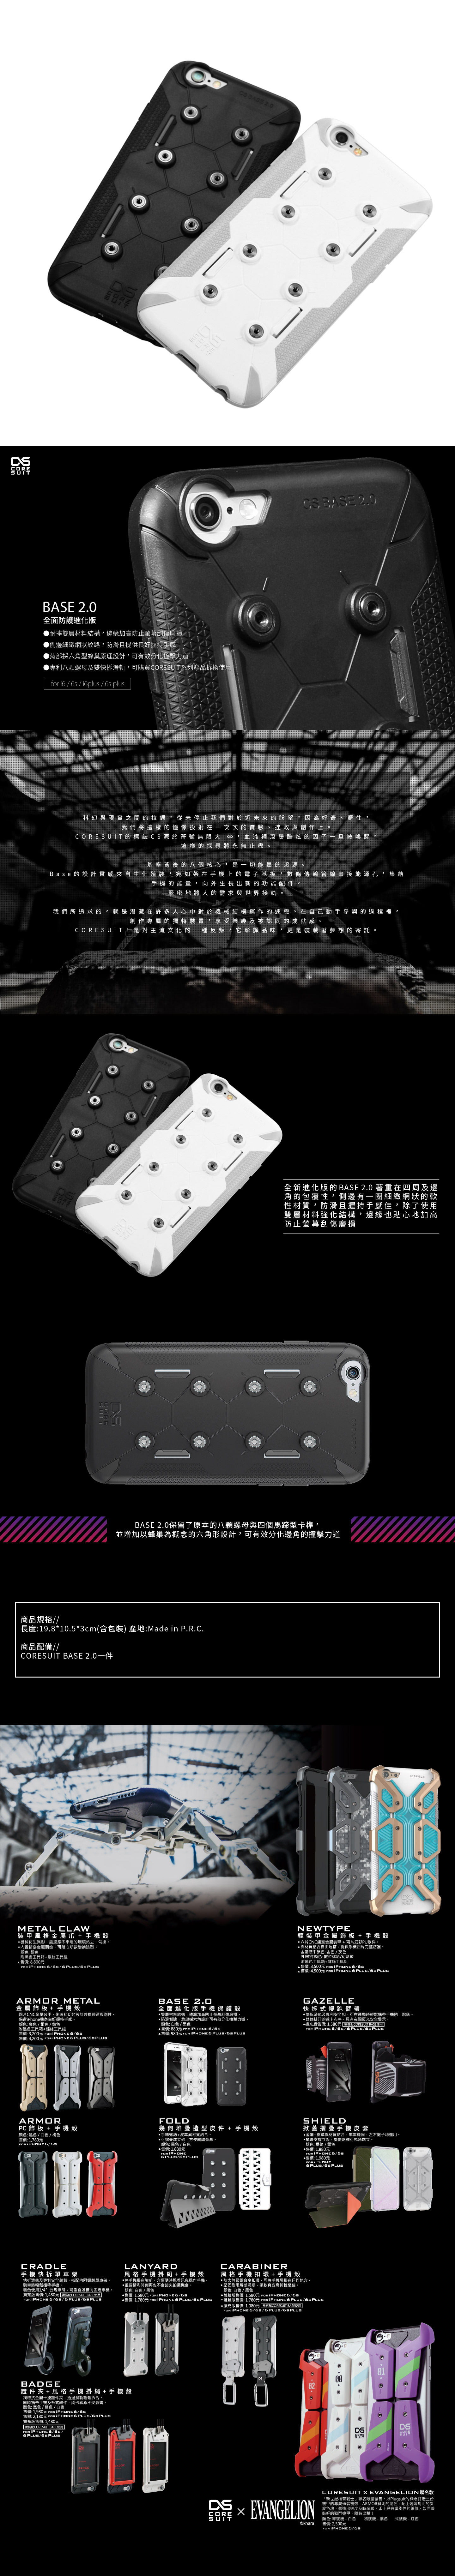 CORESUIT BASE 2.0 全面進化版手機保護殼 iPhone 6/6s 黑色